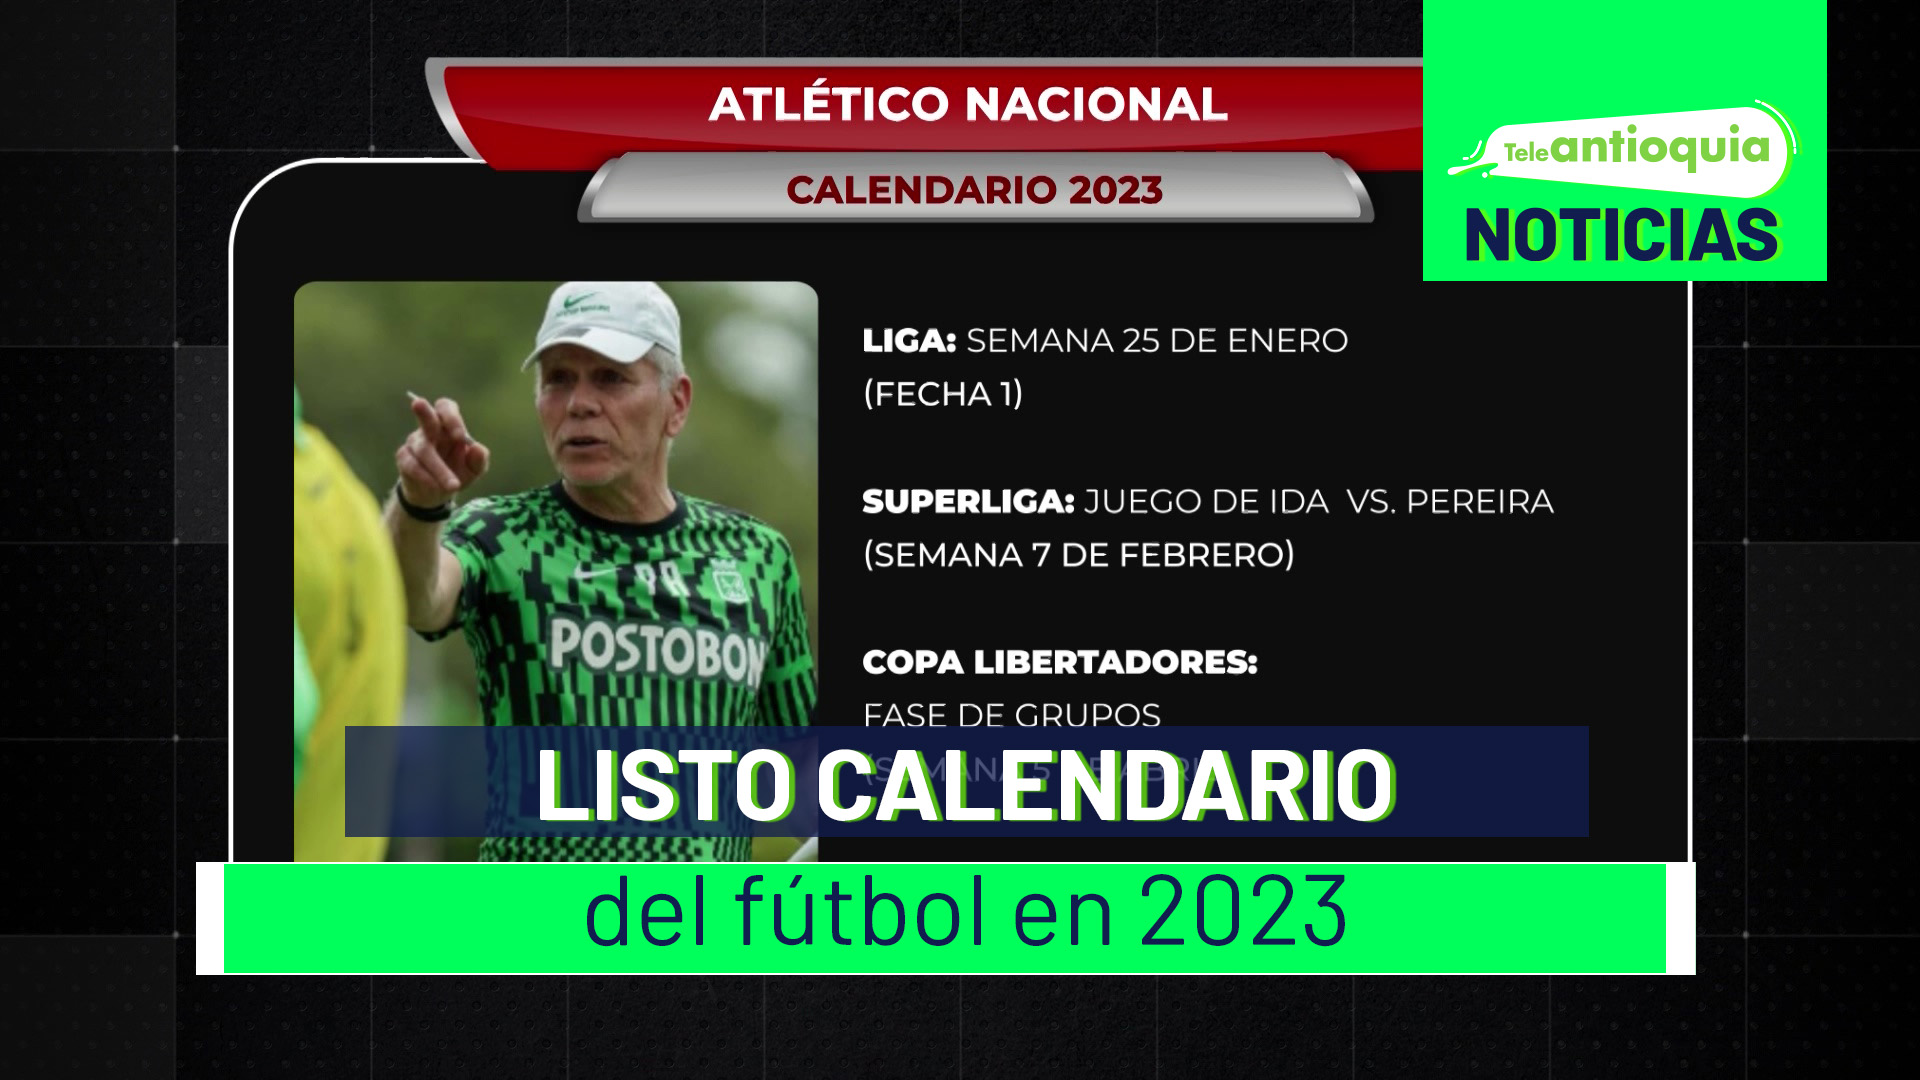 Listo calendario del fútbol en 2023